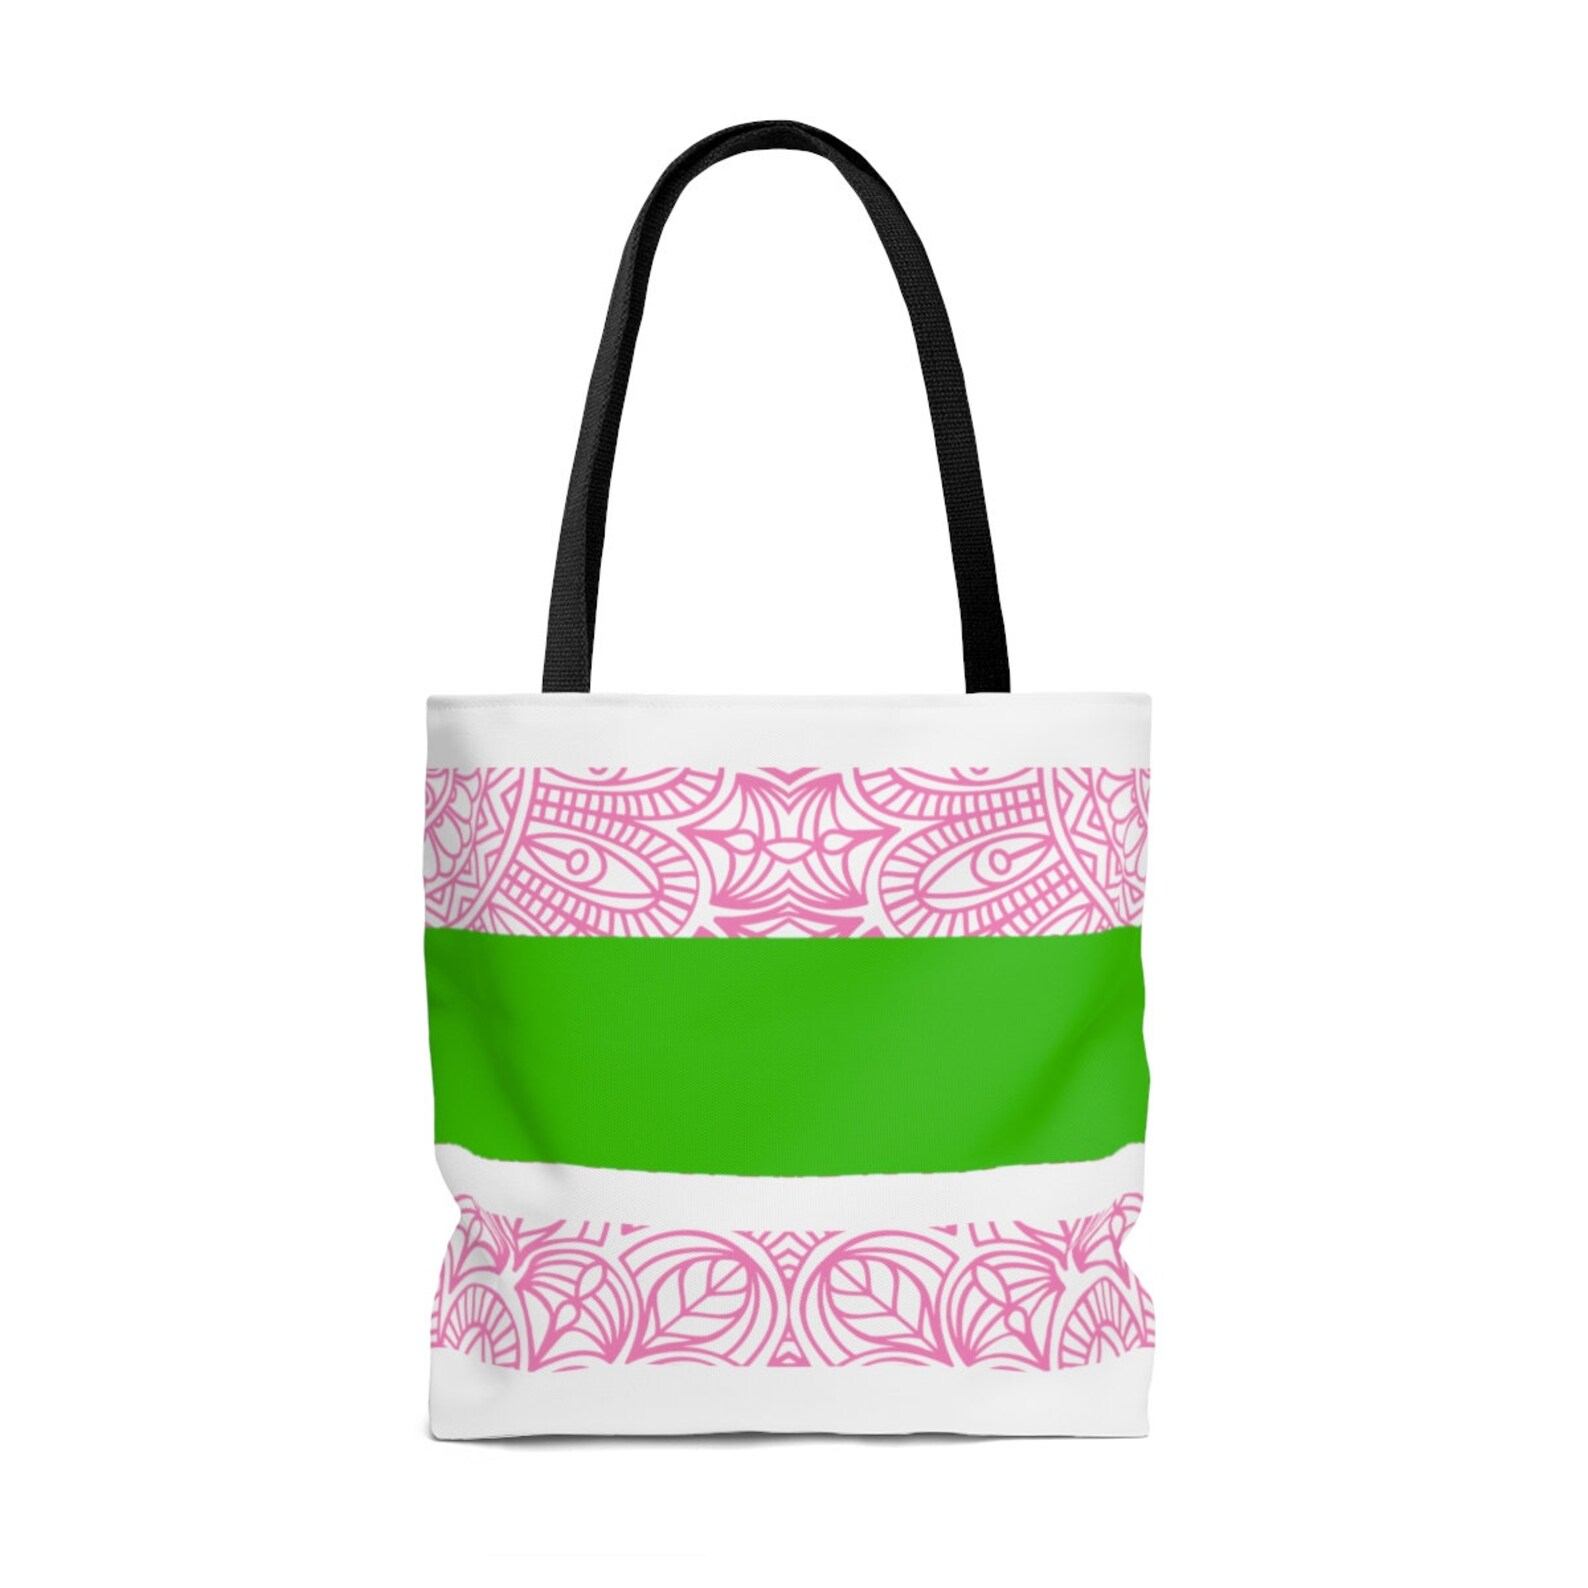 Aka Tote Bag Pink And Green Tote Bag Custom 1908 Aka Bag | Etsy